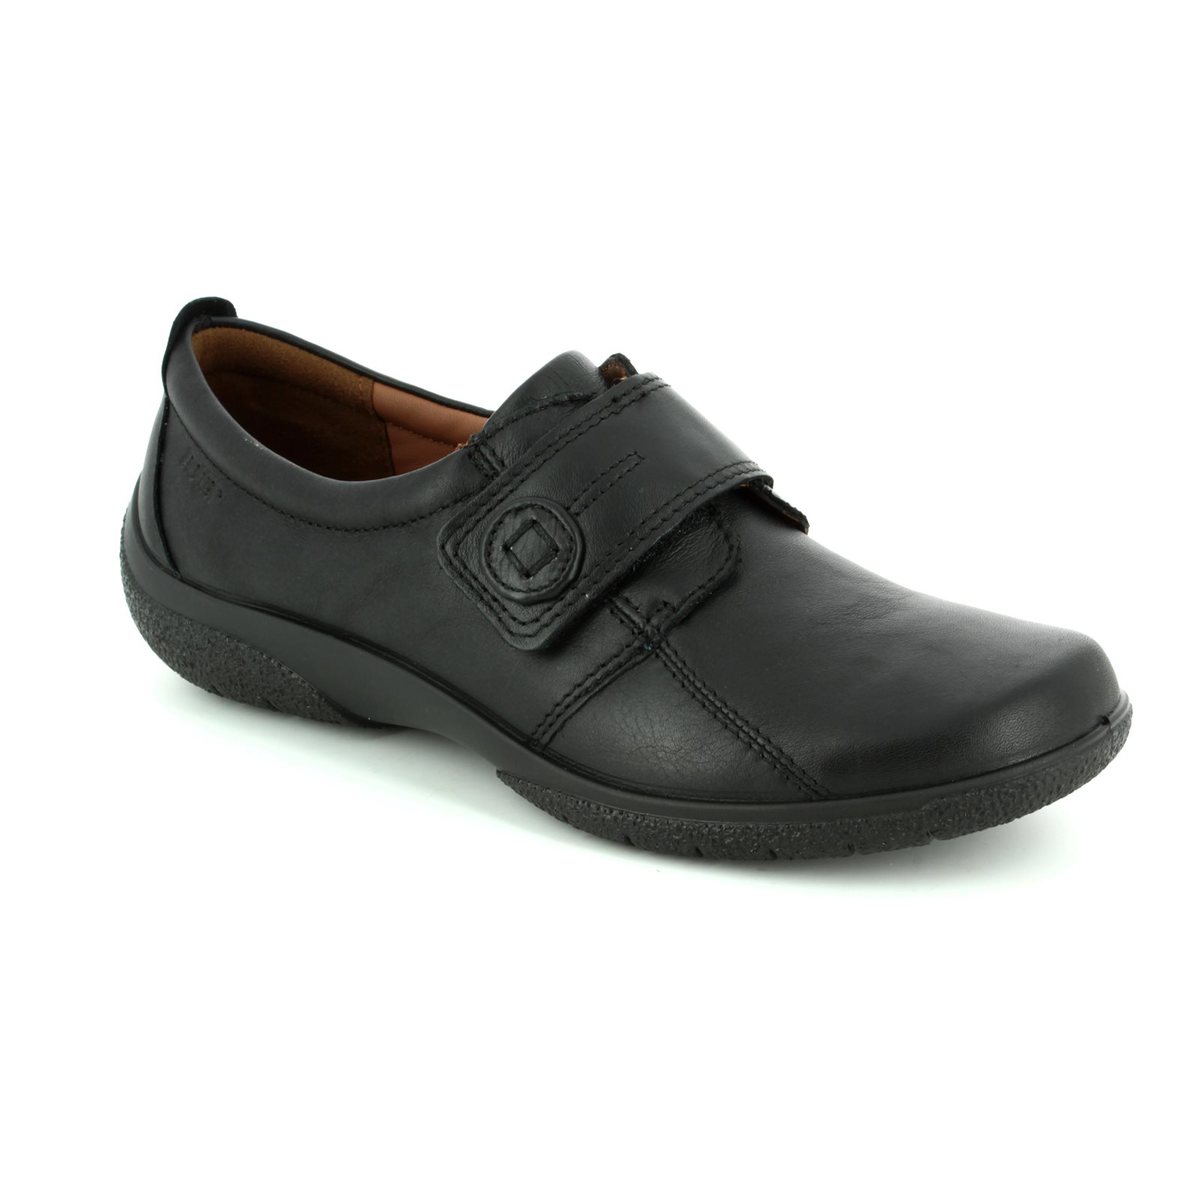 Hotter Sugar 7203-30 Black comfort shoes